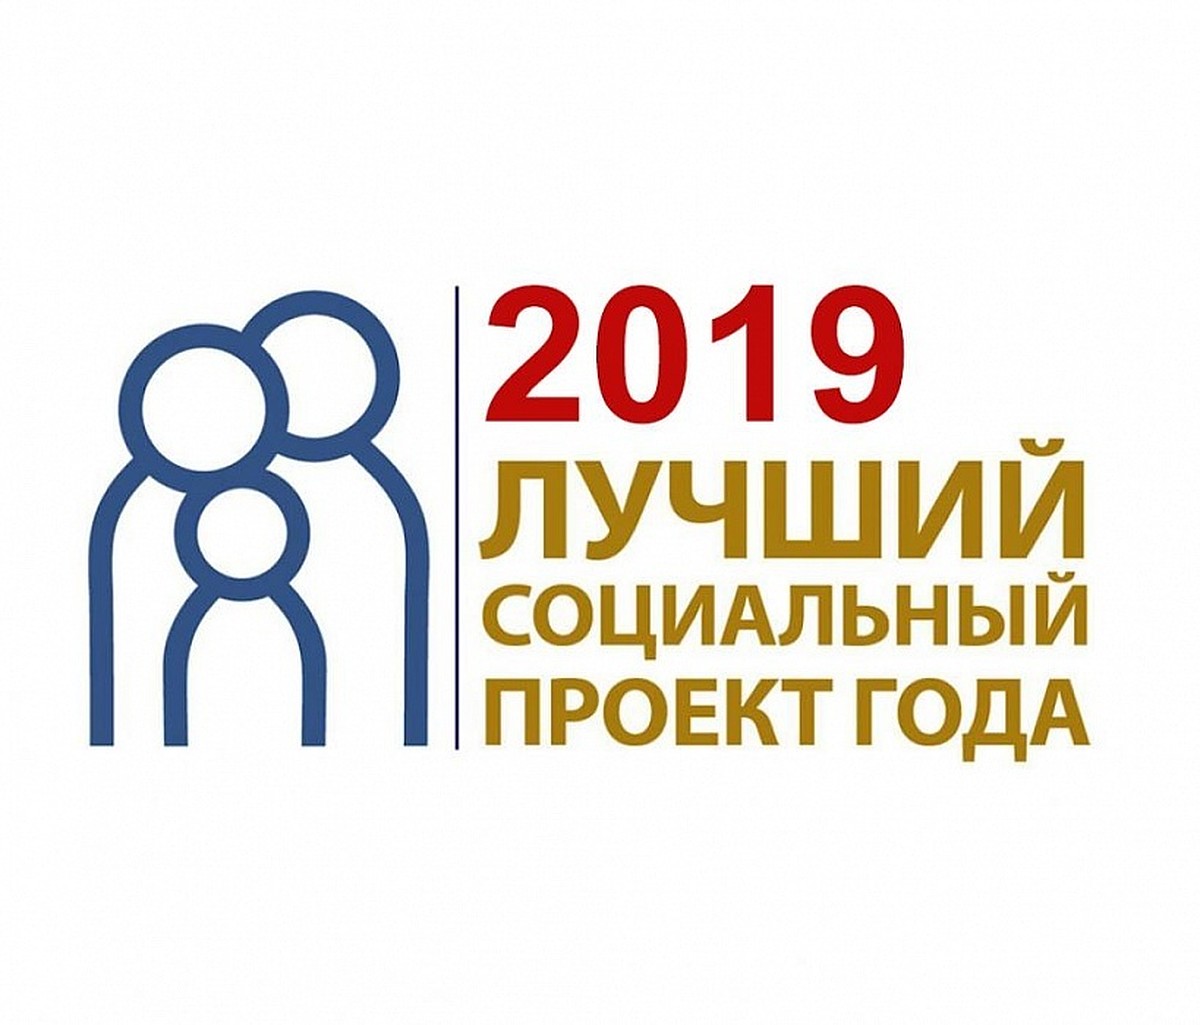 Прием заявок на конкурс «Лучший социальный проект года» в Поморье продлили до 7 октября 